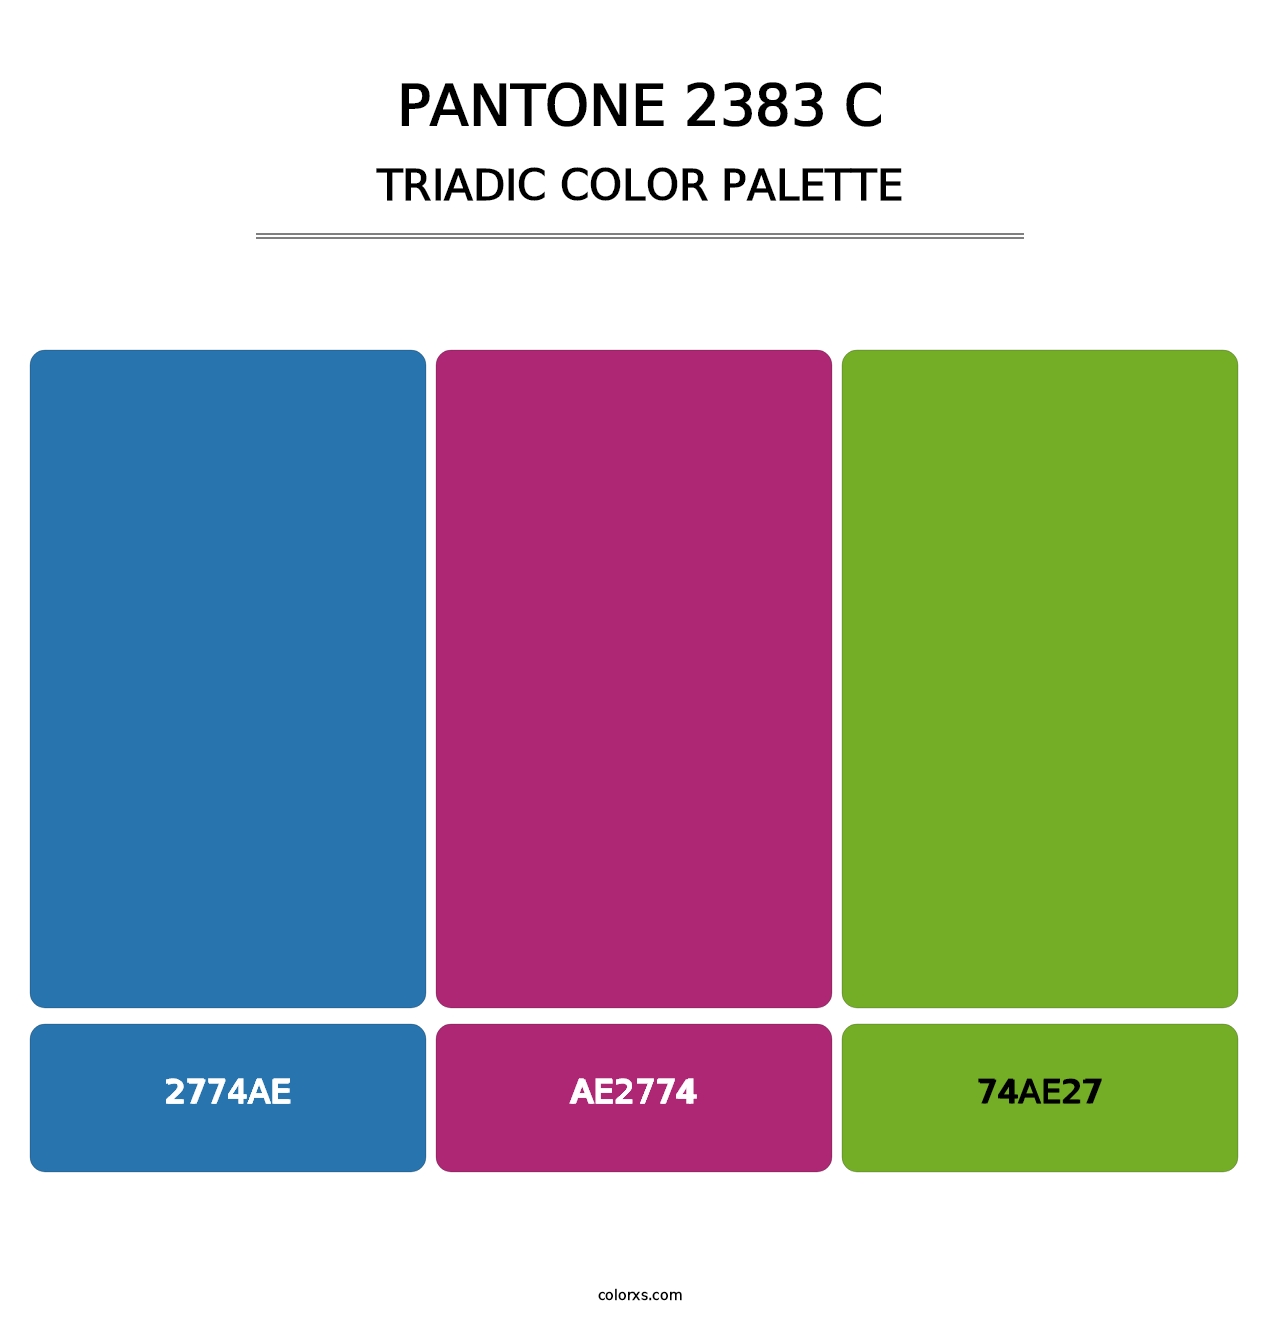 PANTONE 2383 C - Triadic Color Palette